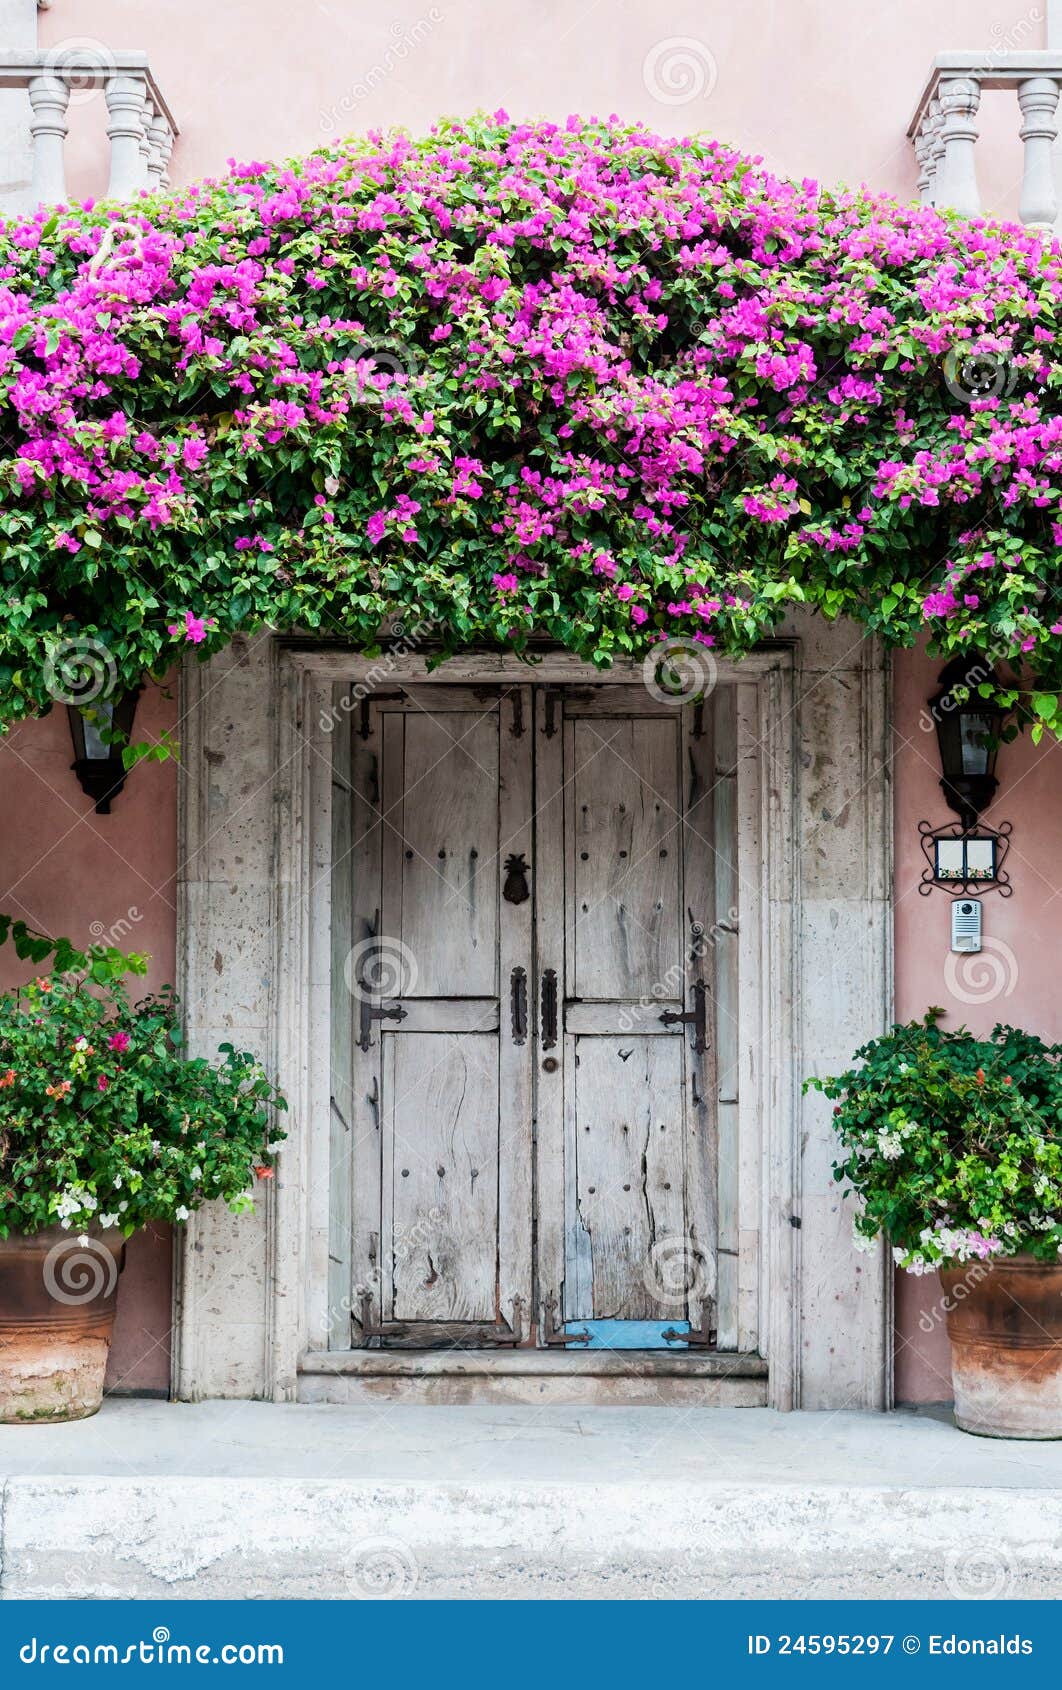 door in mexico